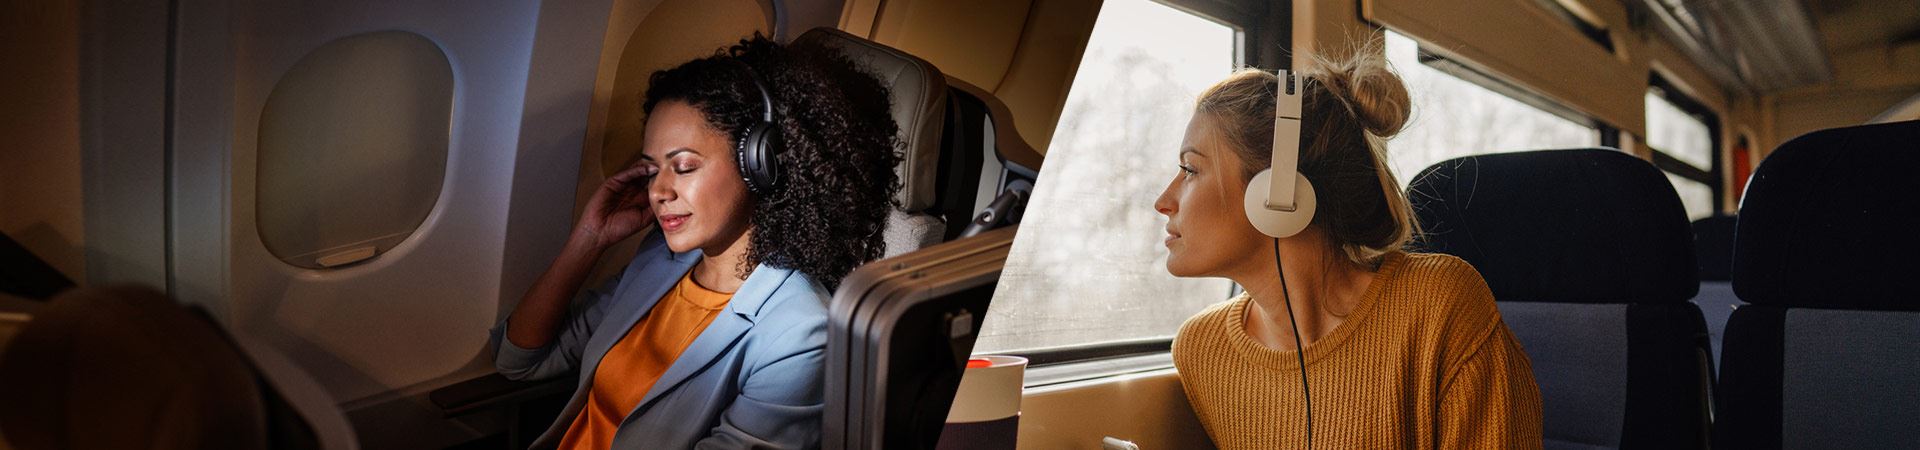 À esquerda, uma fotografia de uma mulher sentada confortavelmente no interior de um avião. À direita, uma fotografia de outra mulher sentada no interior de um comboio, a olhar para o exterior pela janela. Ambas usam auscultadores. O ambiente do avião e do comboio é tranquilo, não sendo visíveis outras pessoas. 